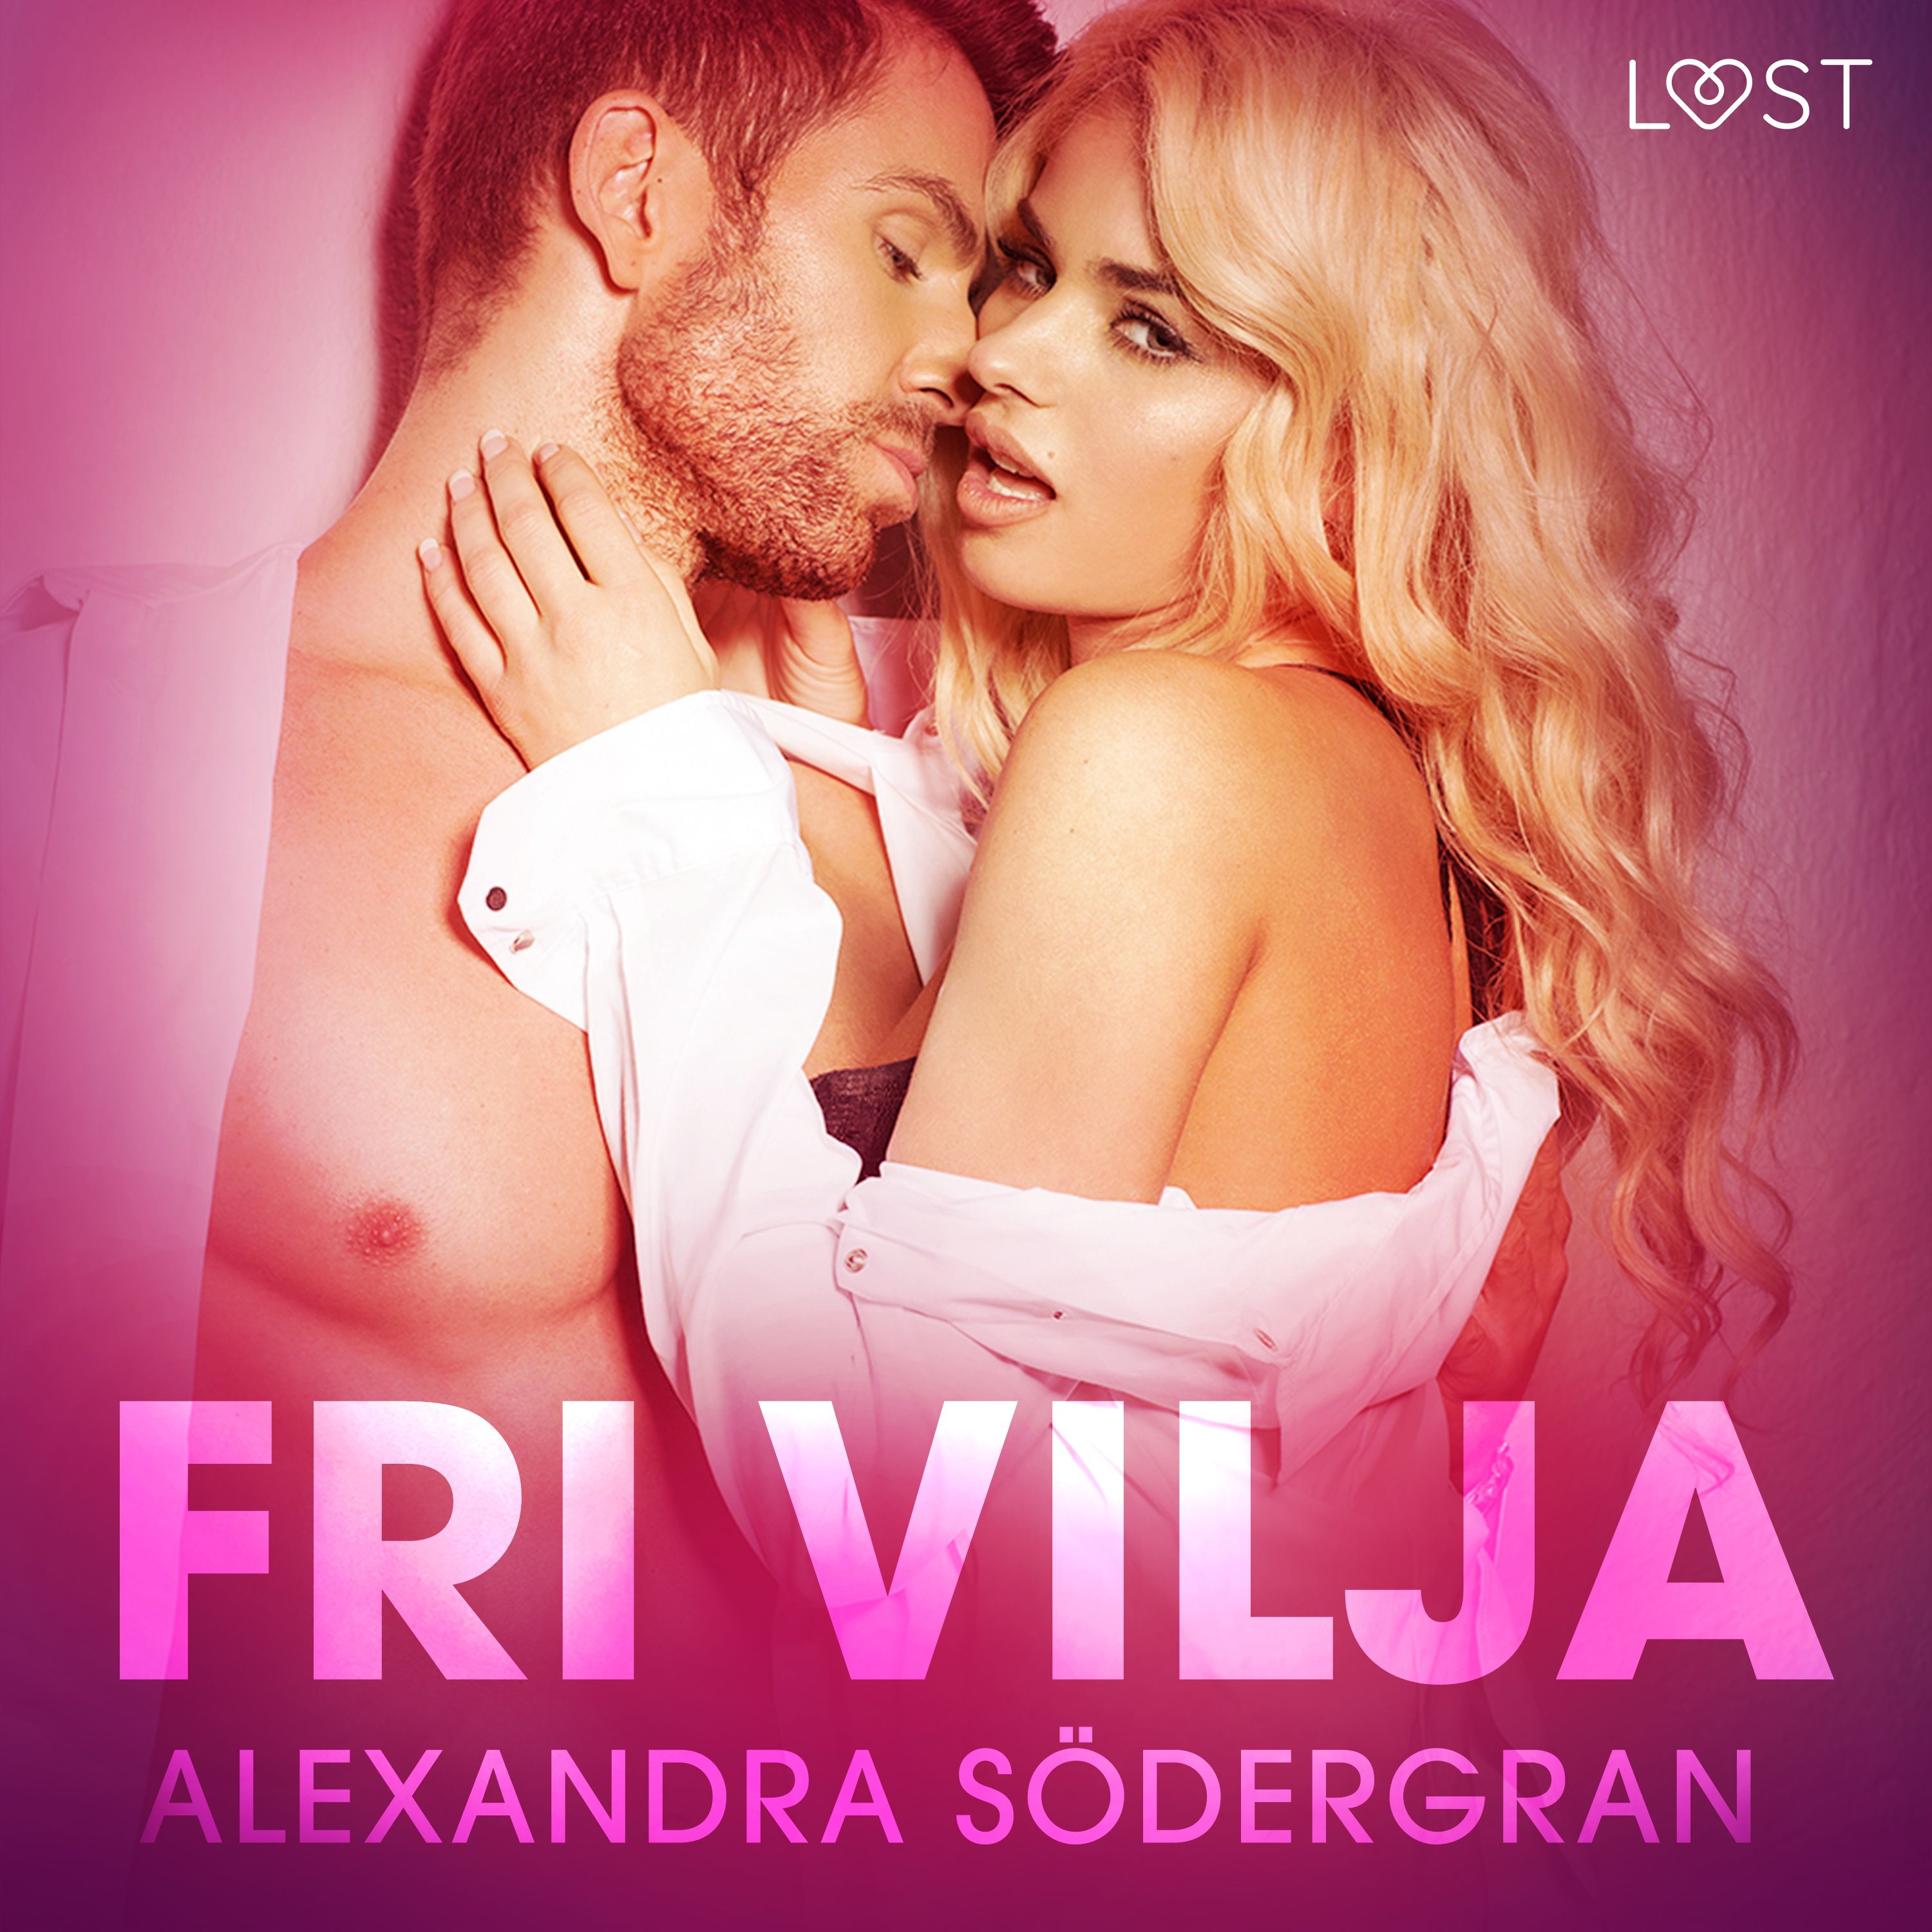 Fri vilja - erotisk novell, audiobook by Alexandra Södergran